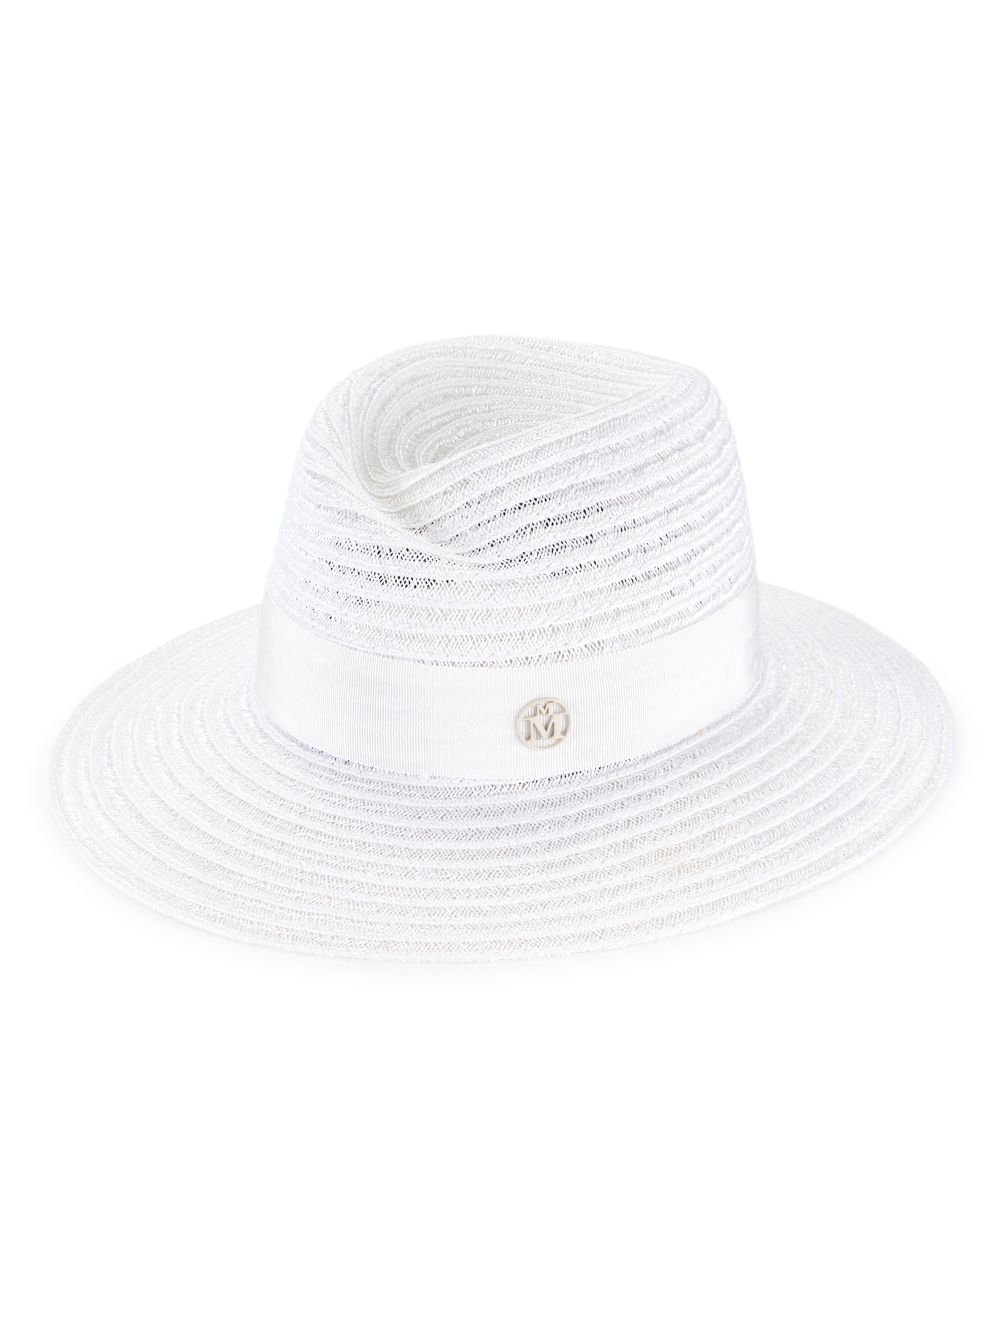 Соломенная шляпа-федора Virginie Maison Michel, белый